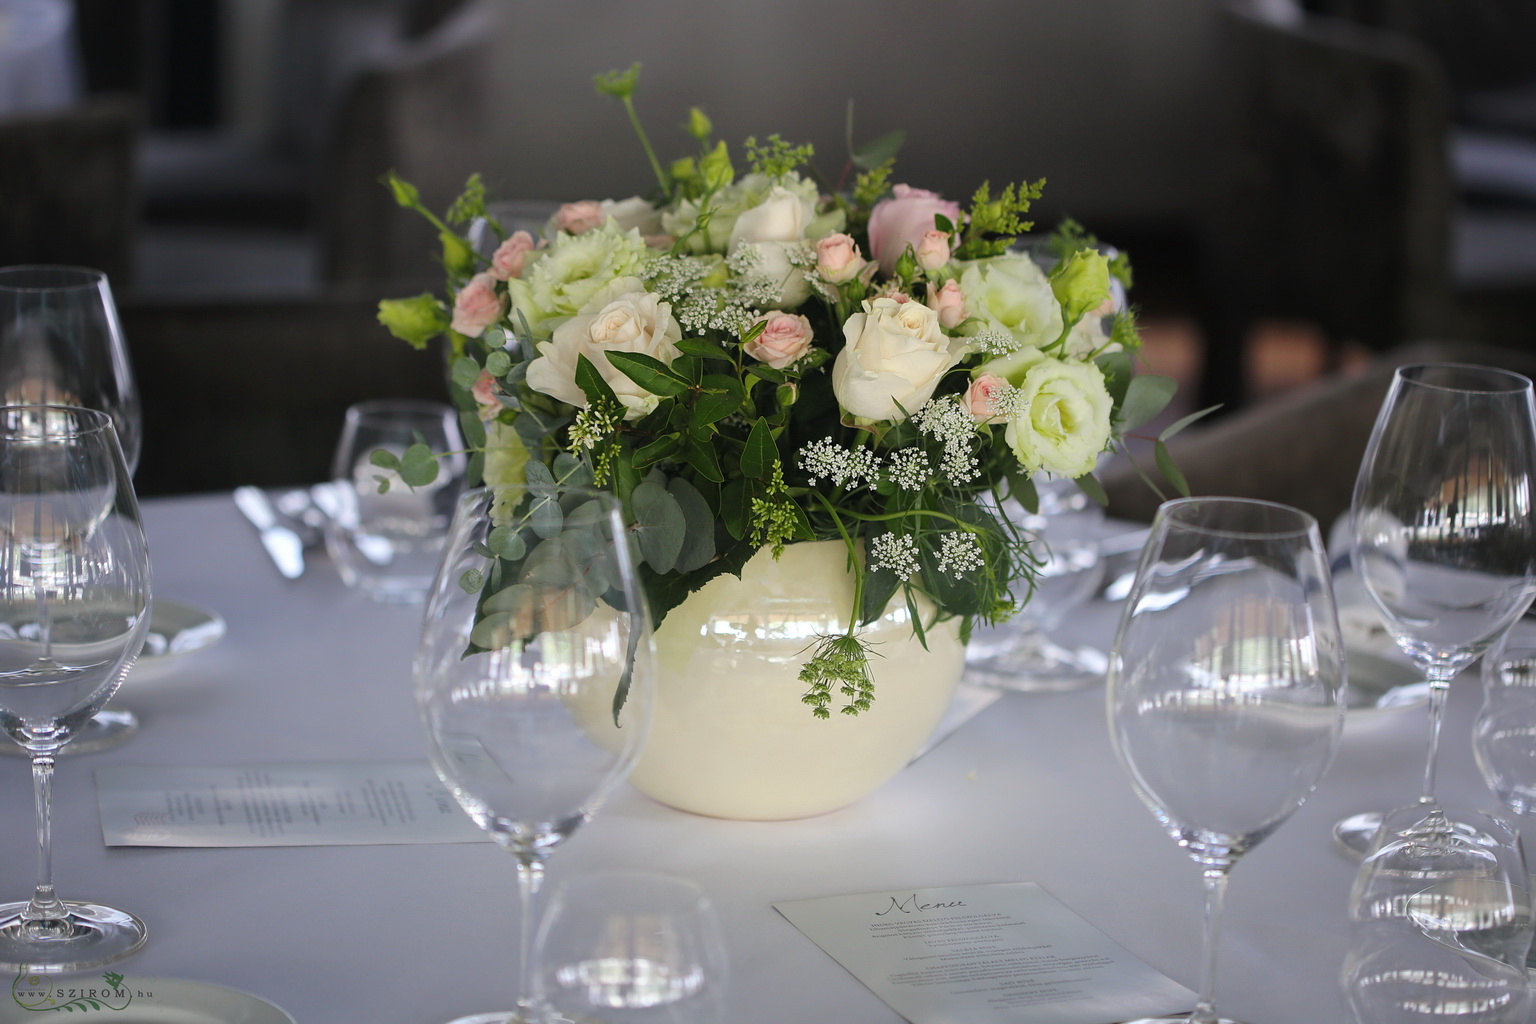 Virágküldés Budapest - Esküvői asztaldísz kerámia gömbben, Spoon Budapest (rózsa, liziantusz, mezei virágok, barack, krém)